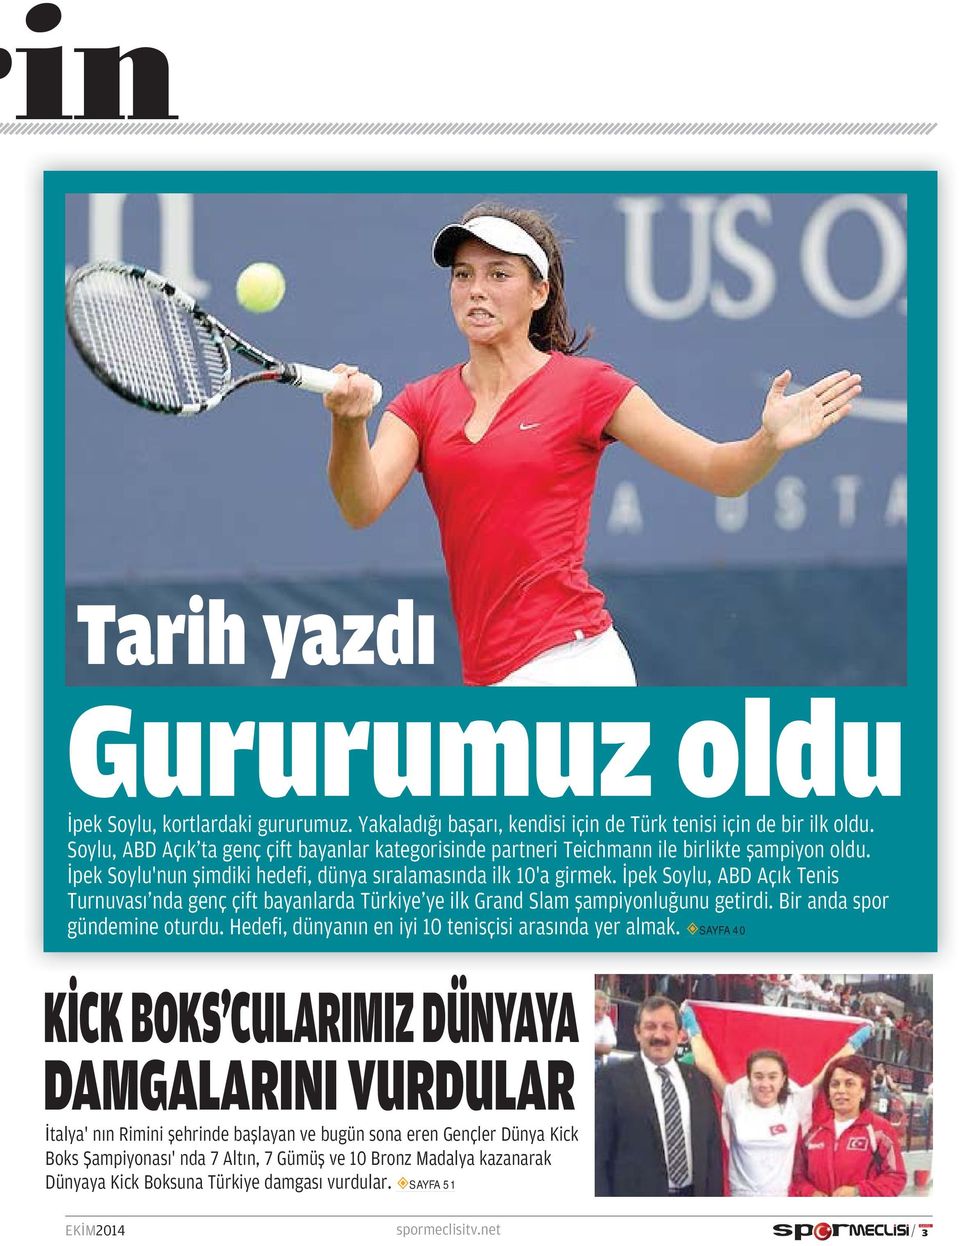 İpek Soylu, ABD Açık Tenis Turnuvası'nda genç çift bayanlarda Türkiye'ye ilk Grand Slam şampiyonluğunu getirdi. Bir anda spor gündemine oturdu.